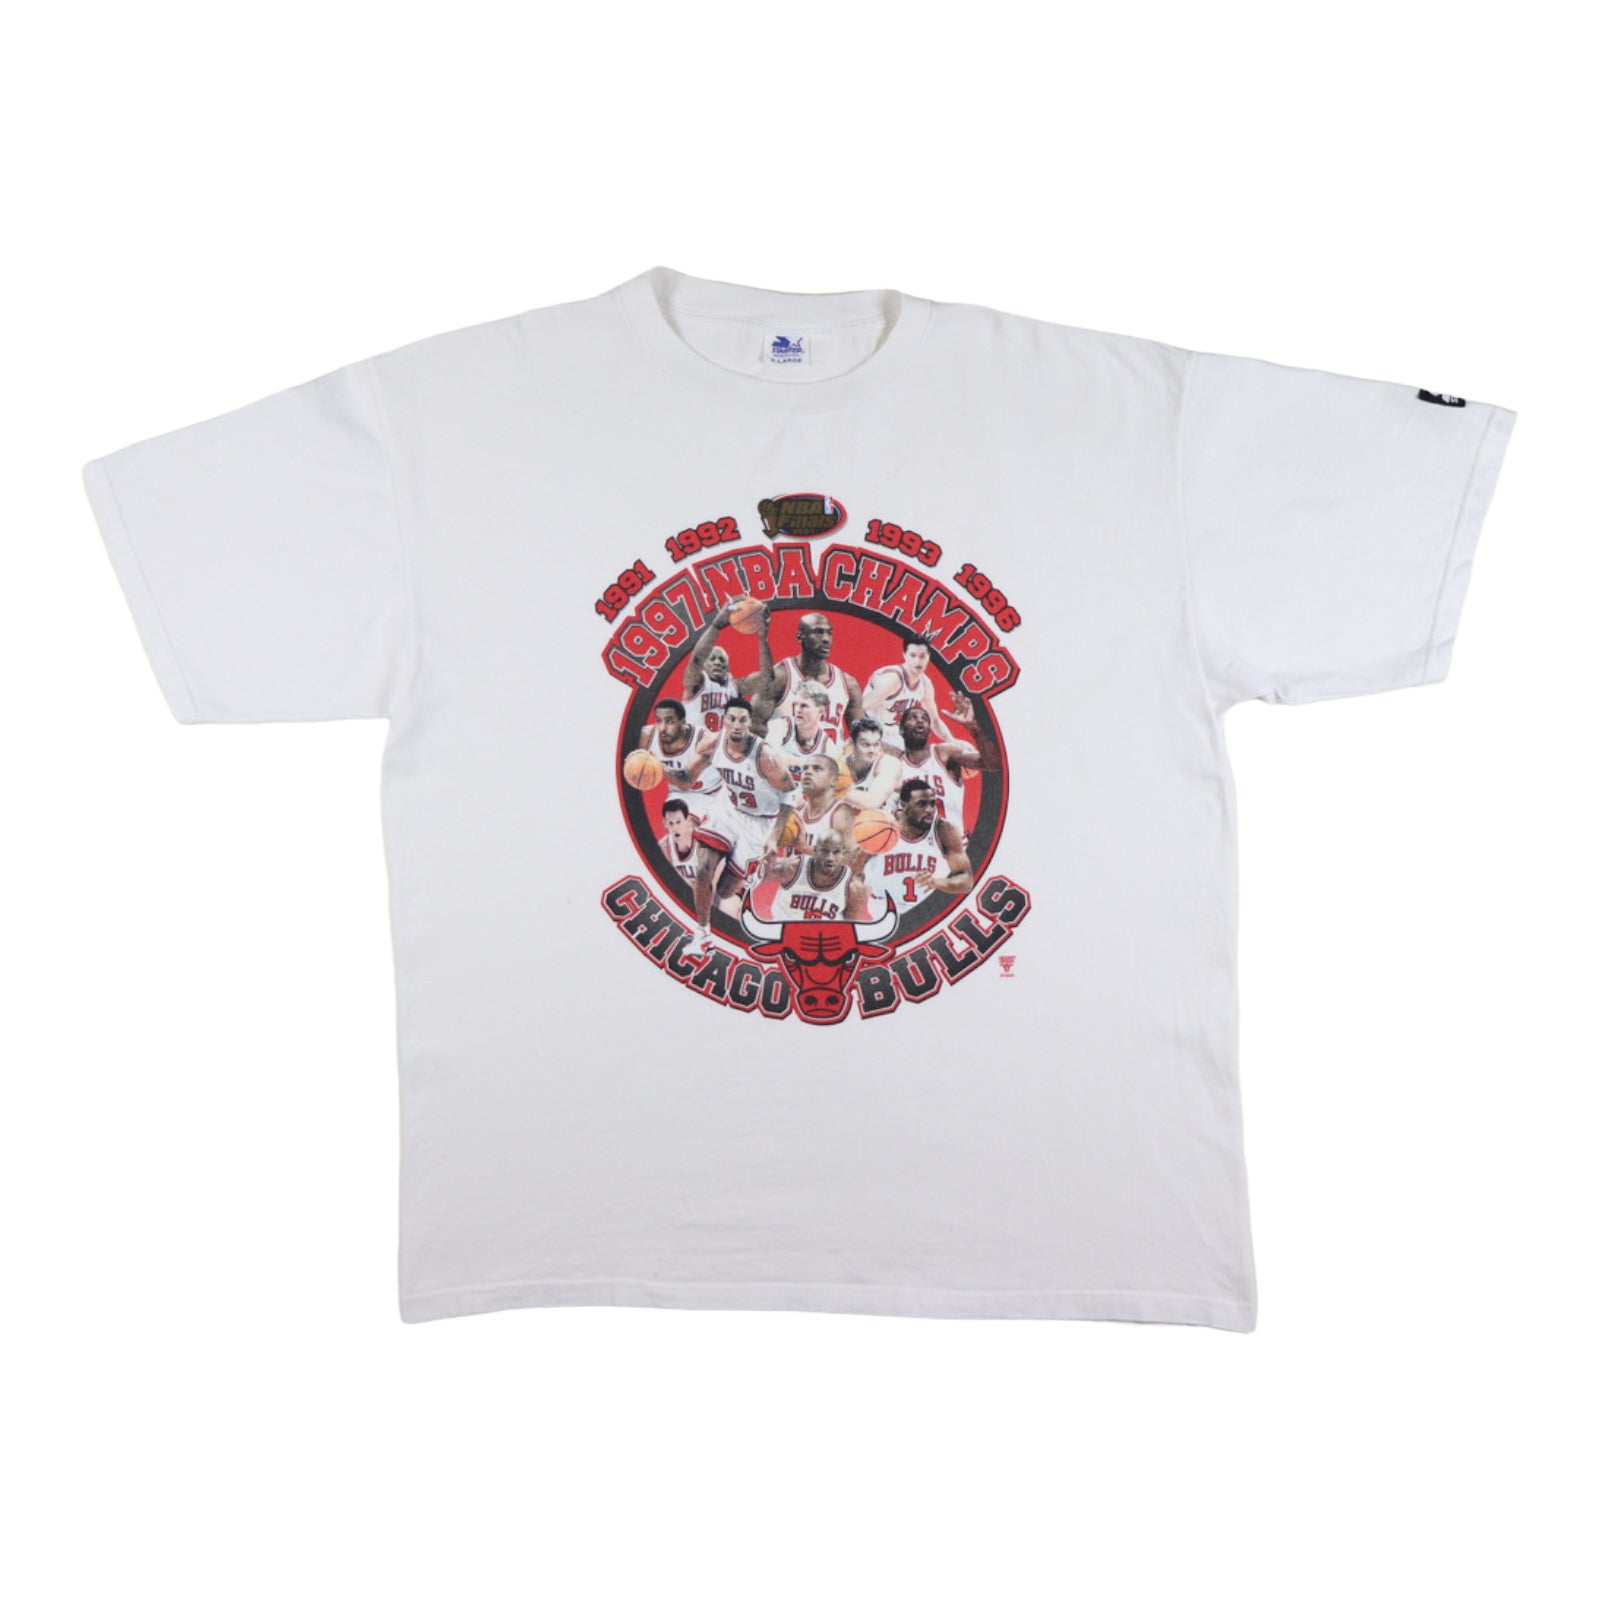 Vintage Starter Chicago Bulls 1996 Greatest Team Ever NBA Champ. White  T-Shirt L